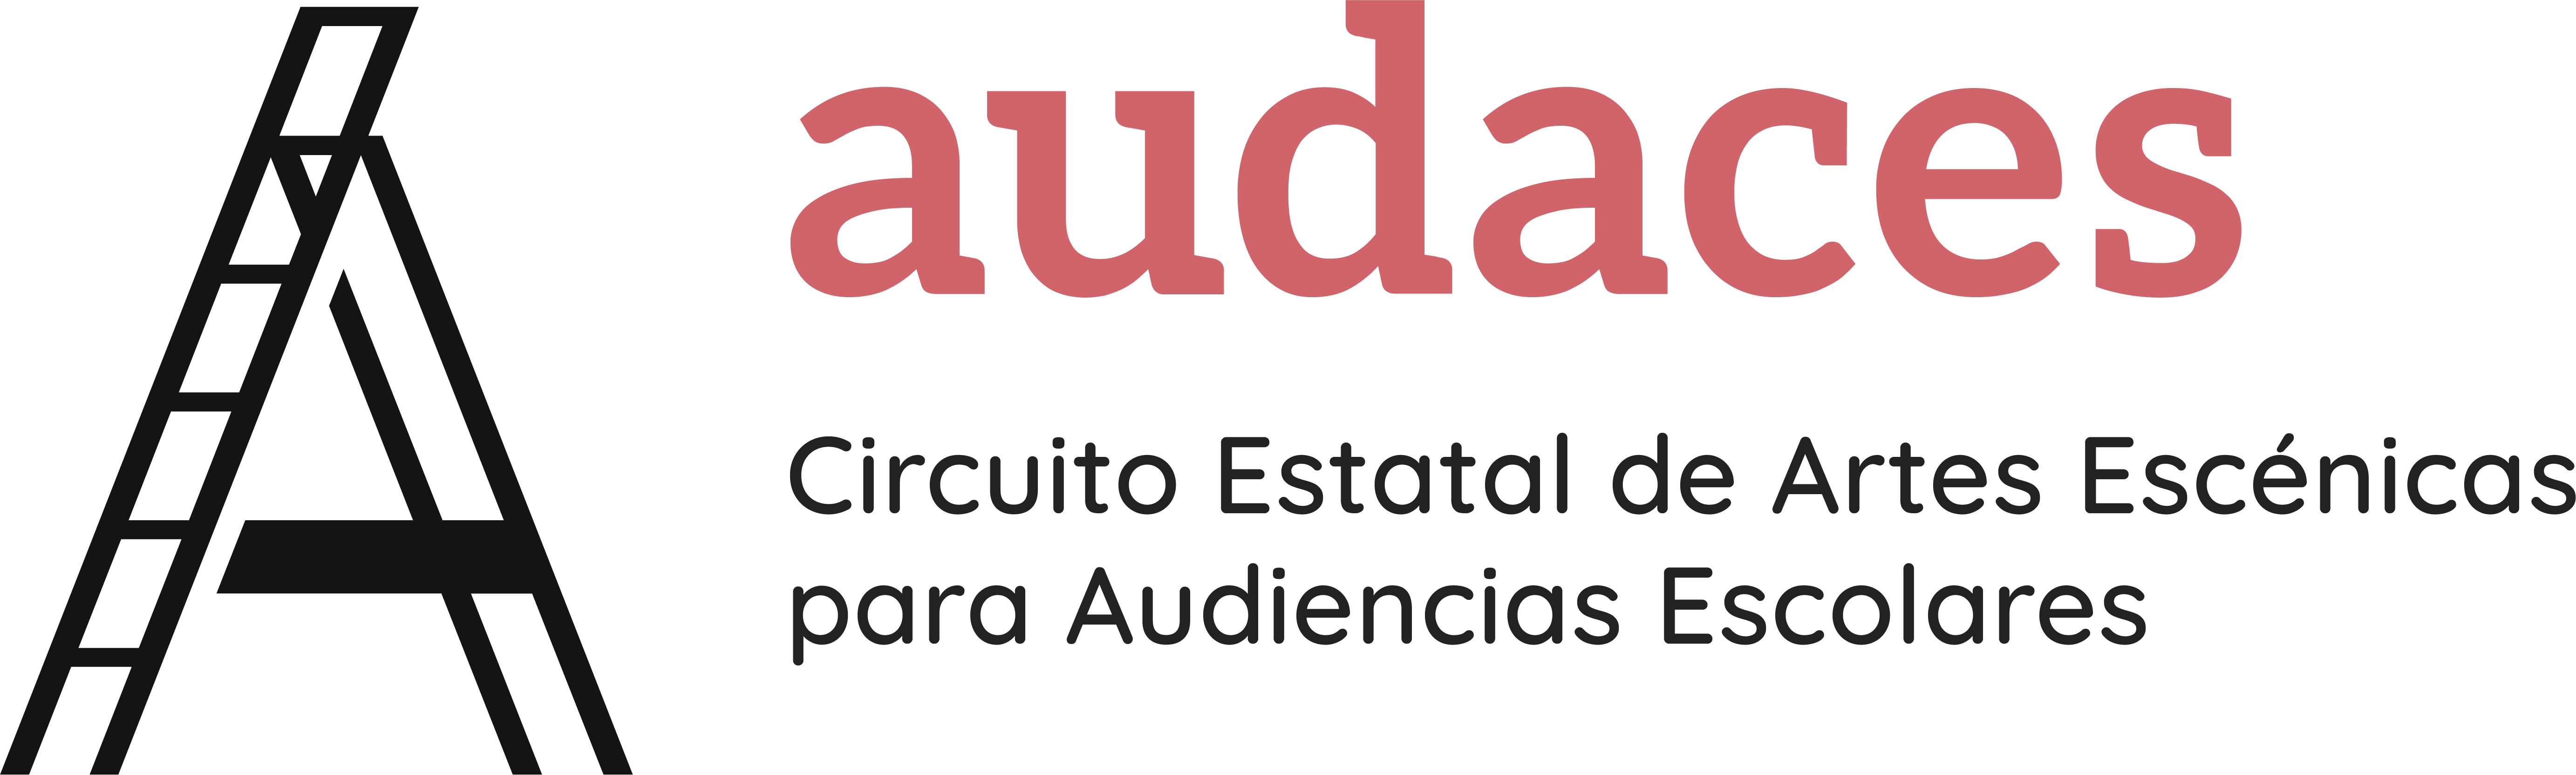 Logo Audaces